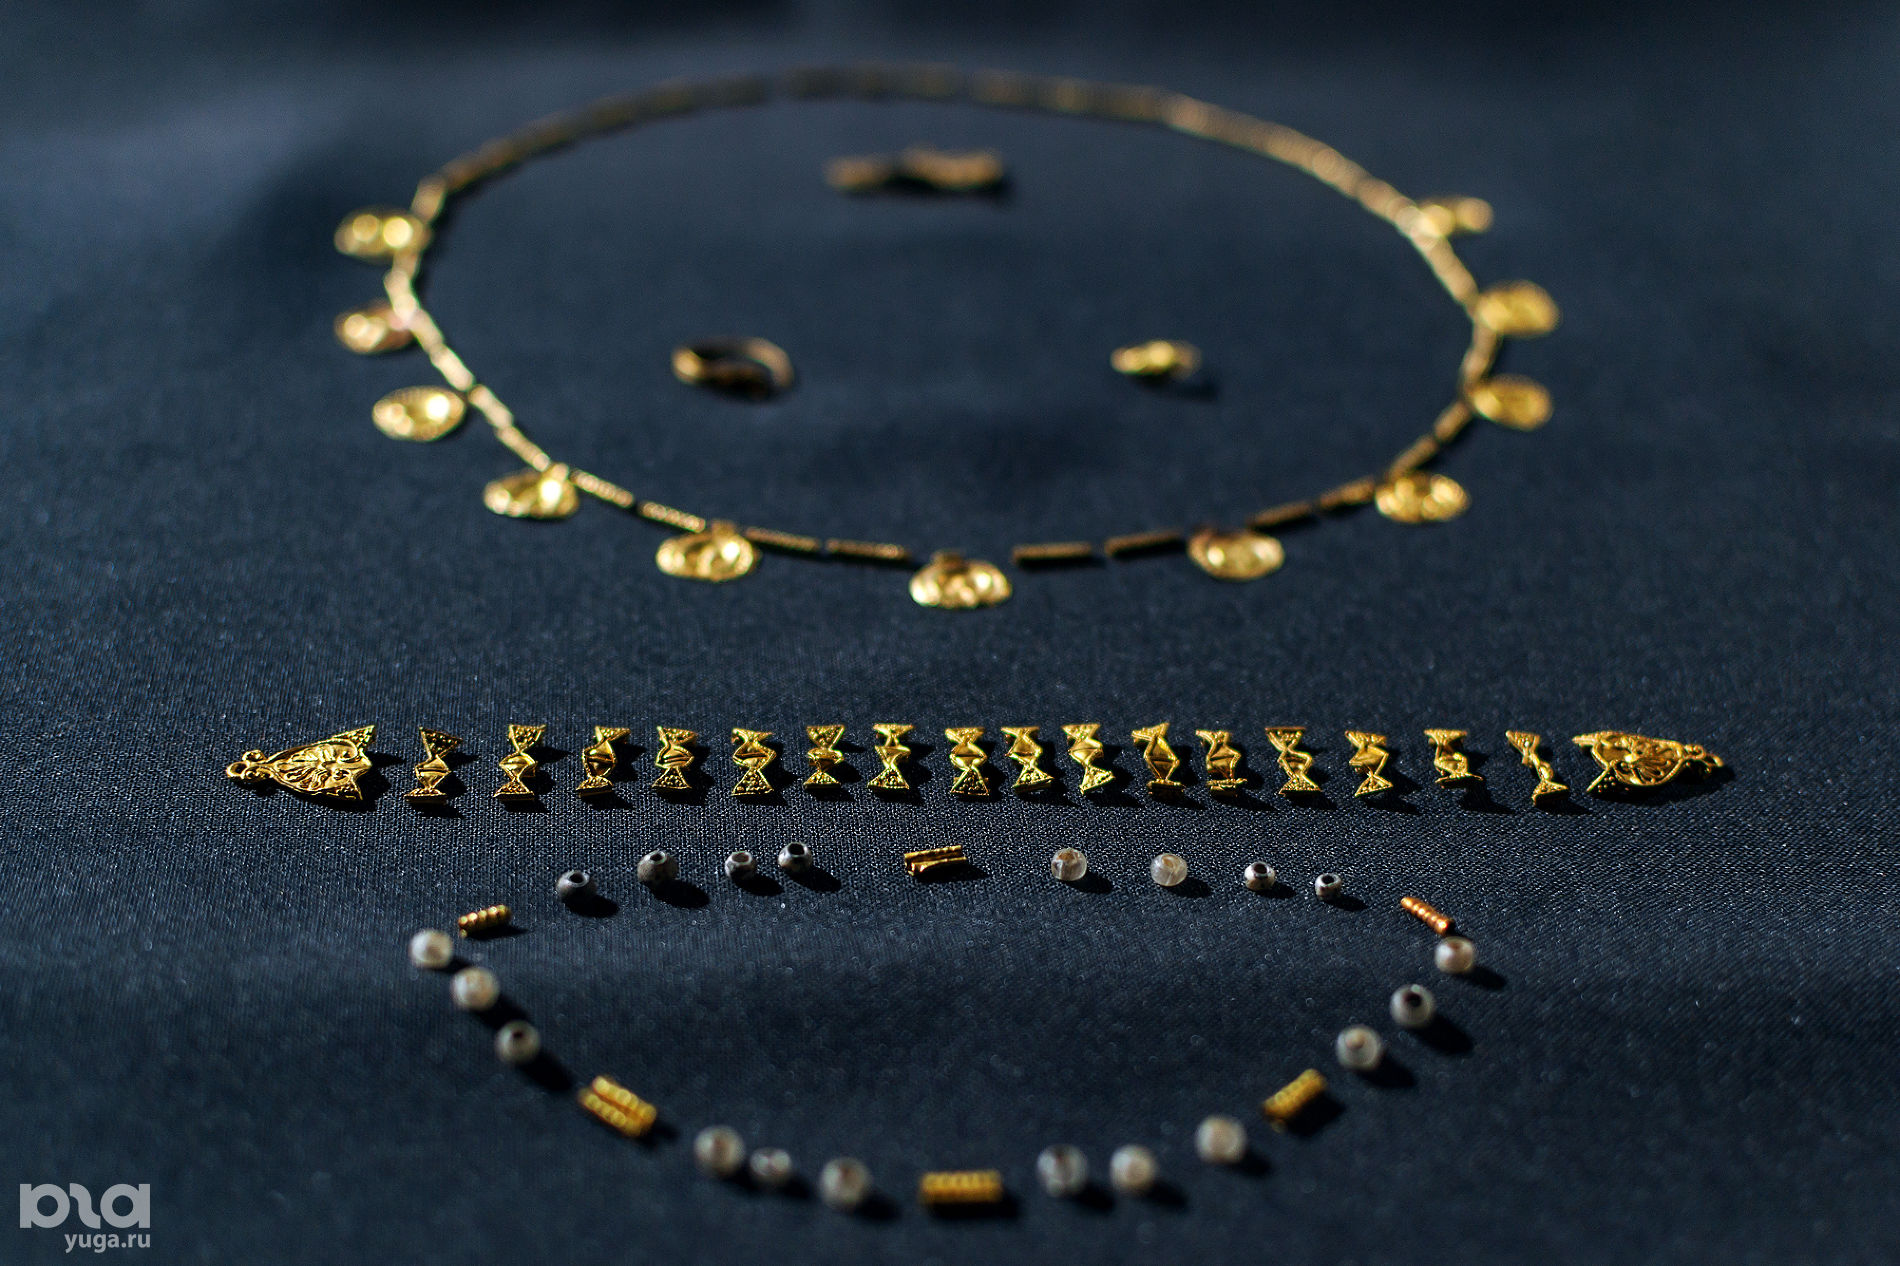 Фанагорийское золото обычно низкой пробы и сделано из фольги © Фото Юли Шафаростовой, Юга.ру